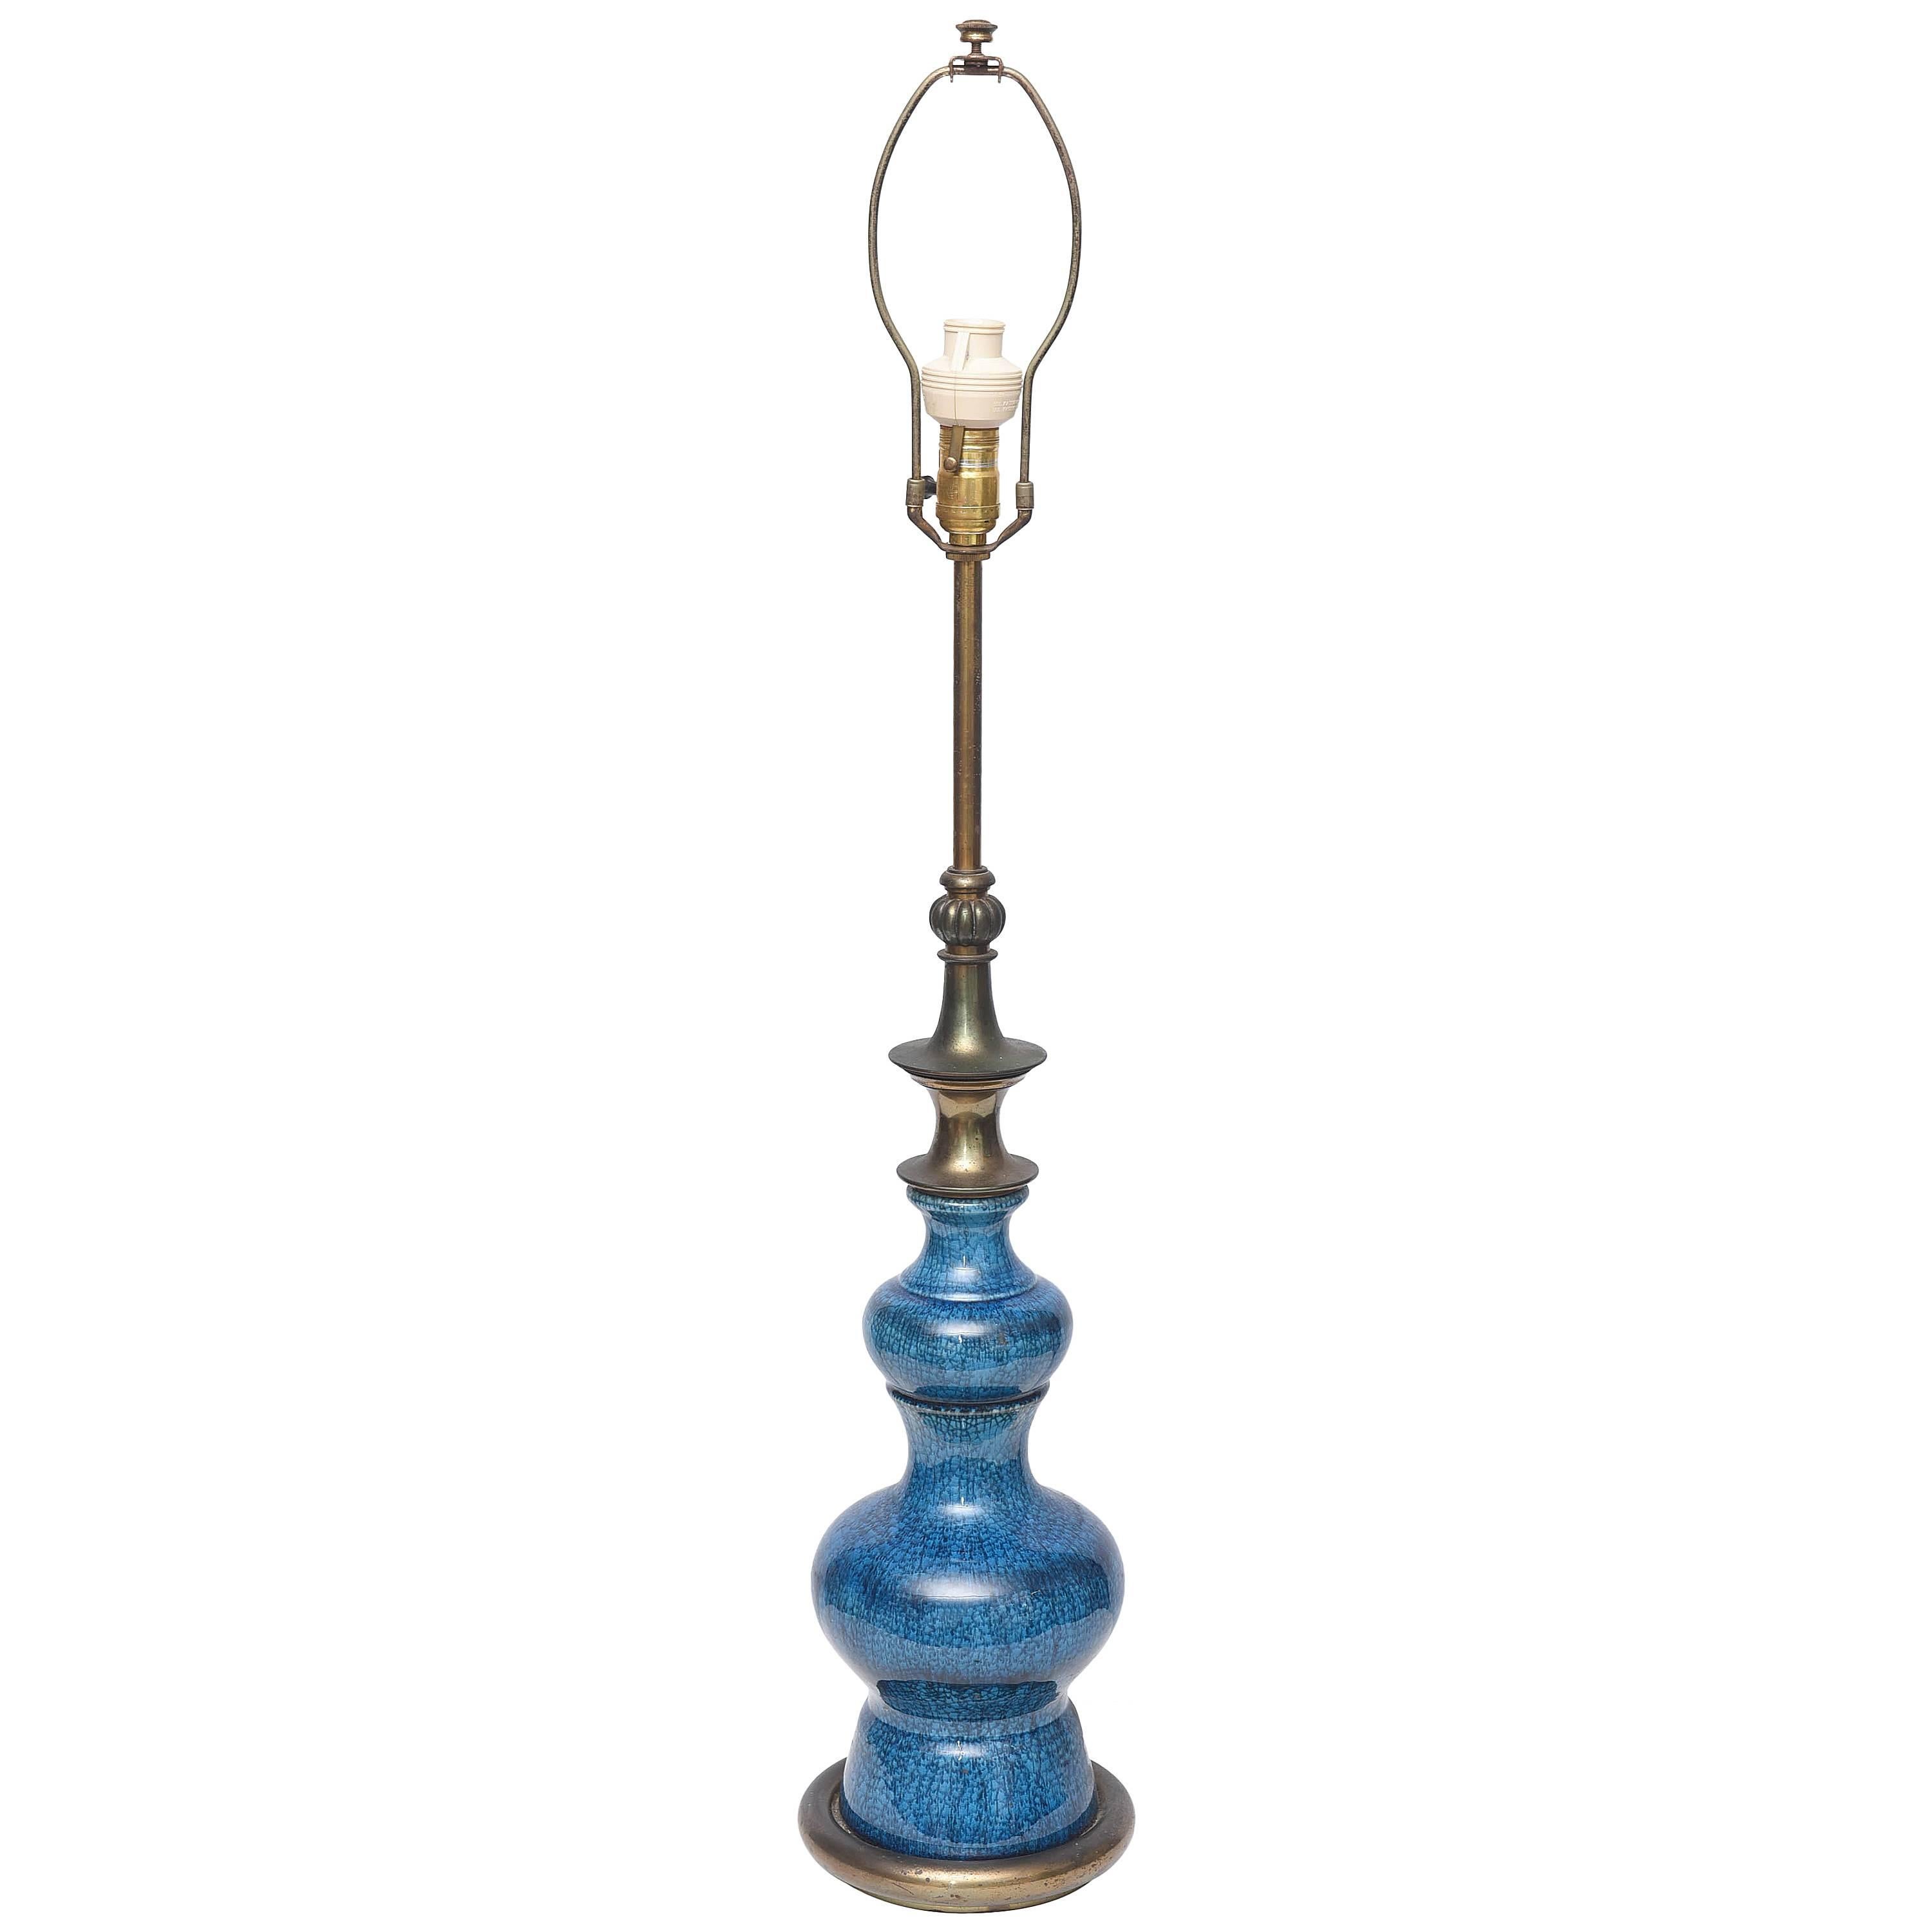 Messing- und Keramik-Stiffel-Lampe, 1960er Jahre, USA